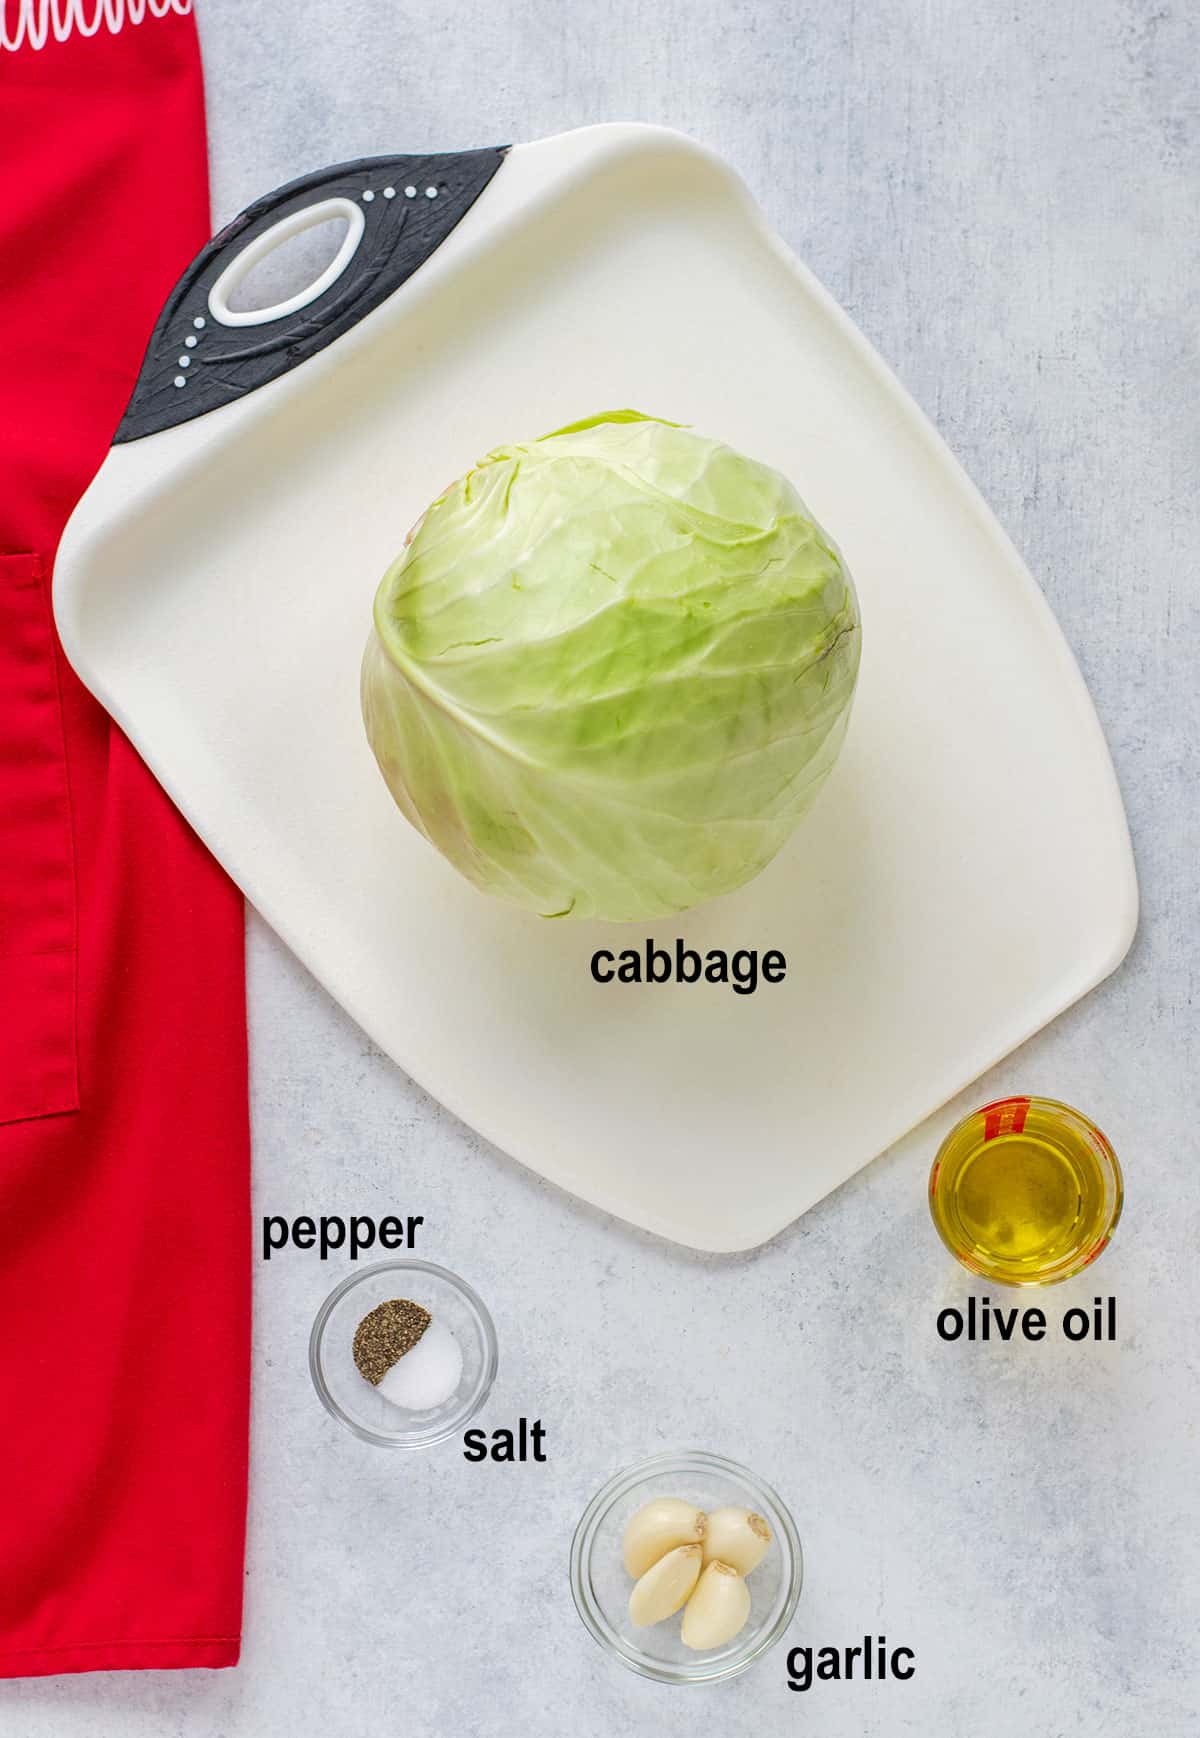 cabbage, pepper, salt, olive oil, garlic